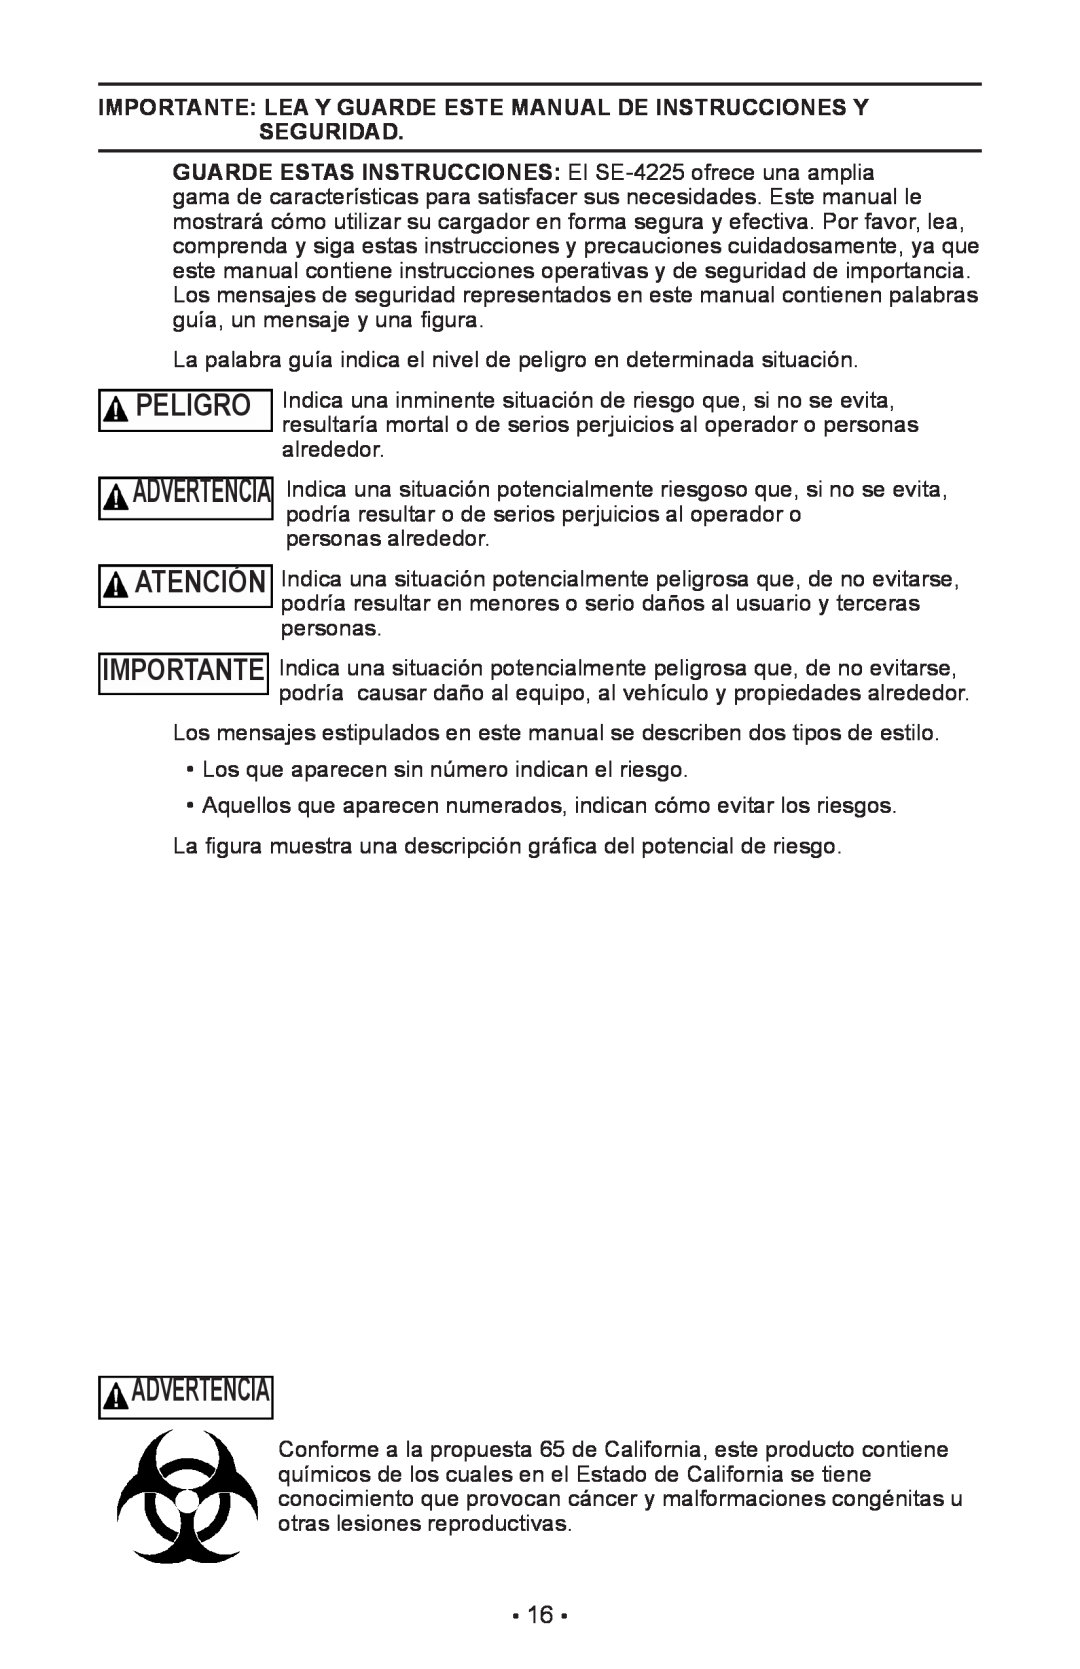 Schumacher SE-4225 owner manual Advertencia, Peligro, Importante Lea Y Guarde Este Manual De Instrucciones Y Seguridad 